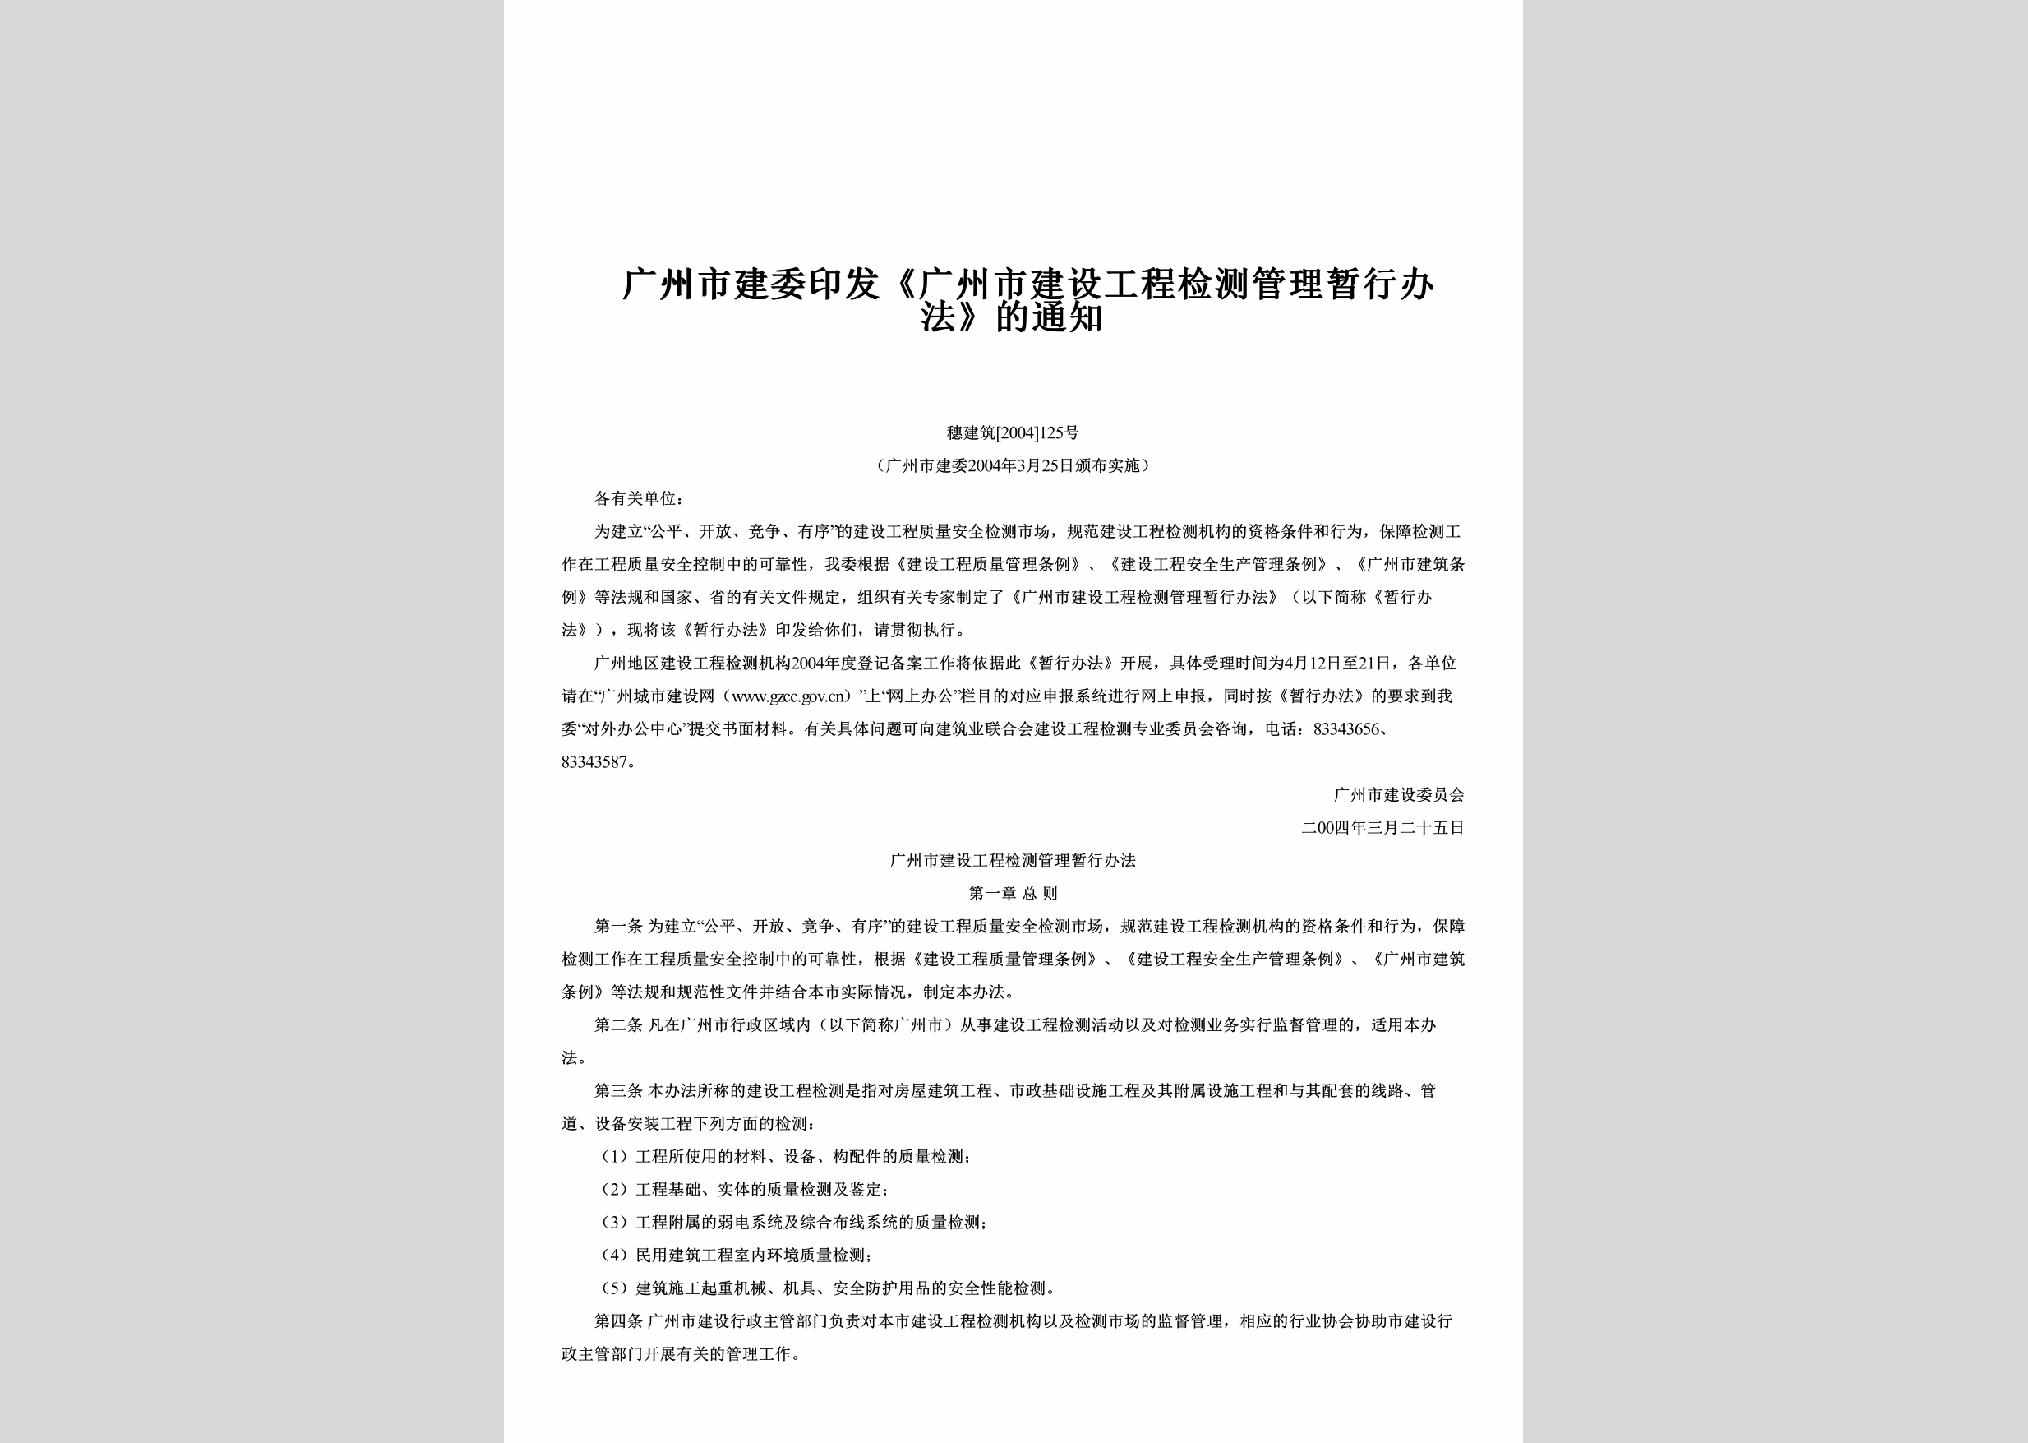 穗建筑[2004]125号：印发《广州市建设工程检测管理暂行办法》的通知